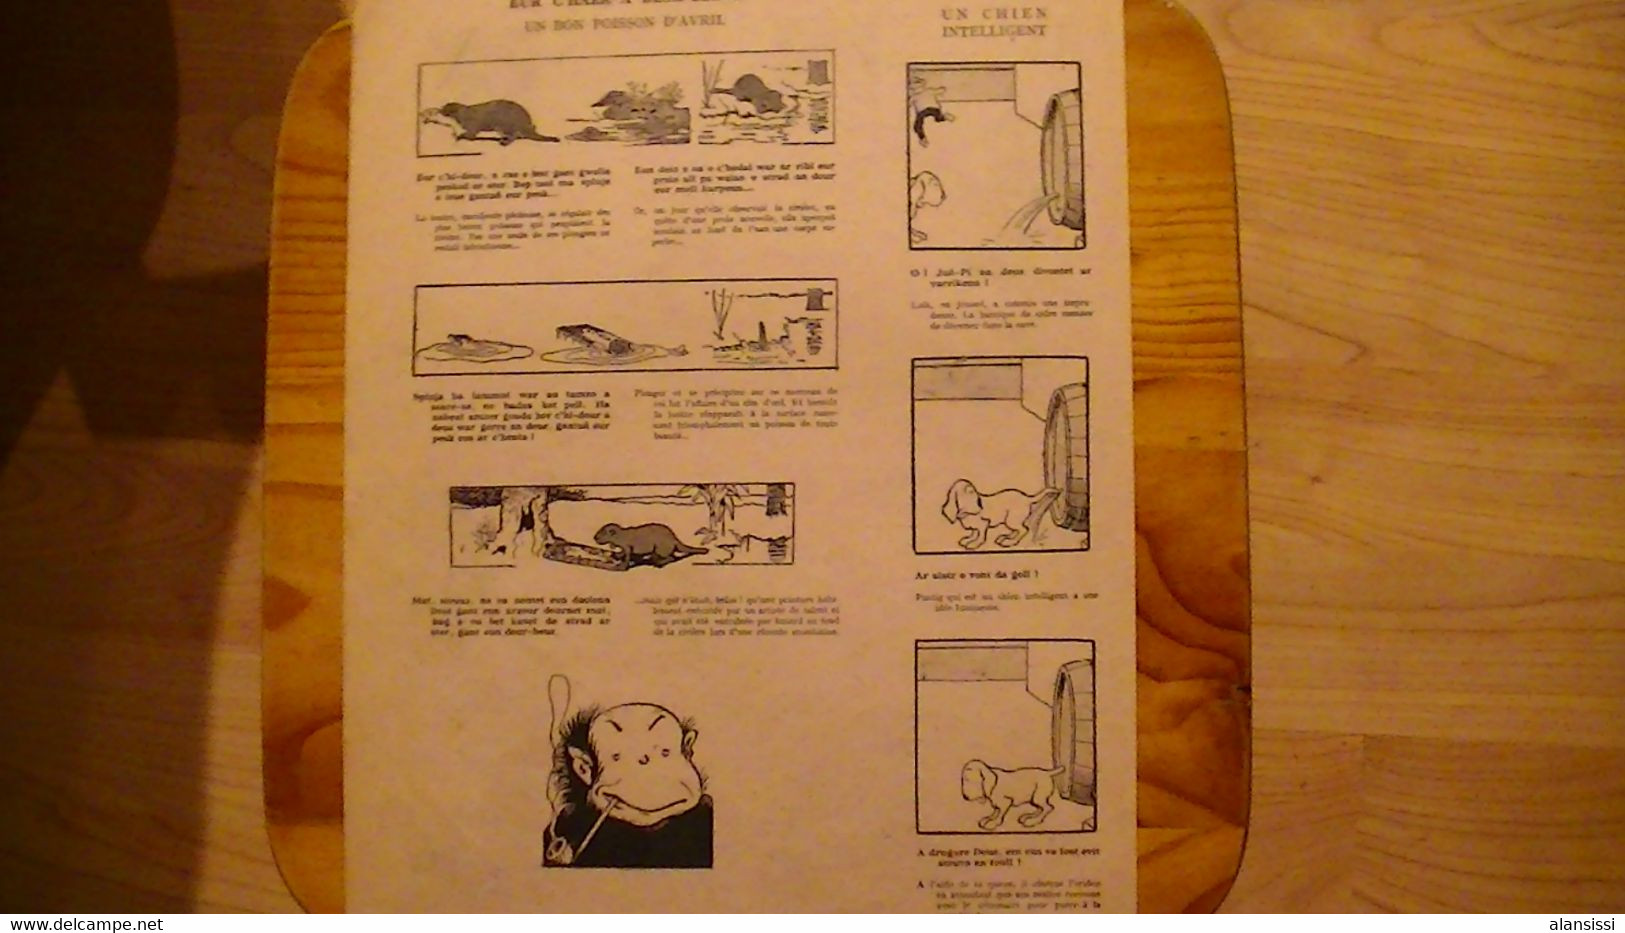 BENJAMIN RABIER  34 PAGES tirées du livre "Au temps où les bêtes parlaient breton"  de 1943, coté 600 euros. Bilingue.